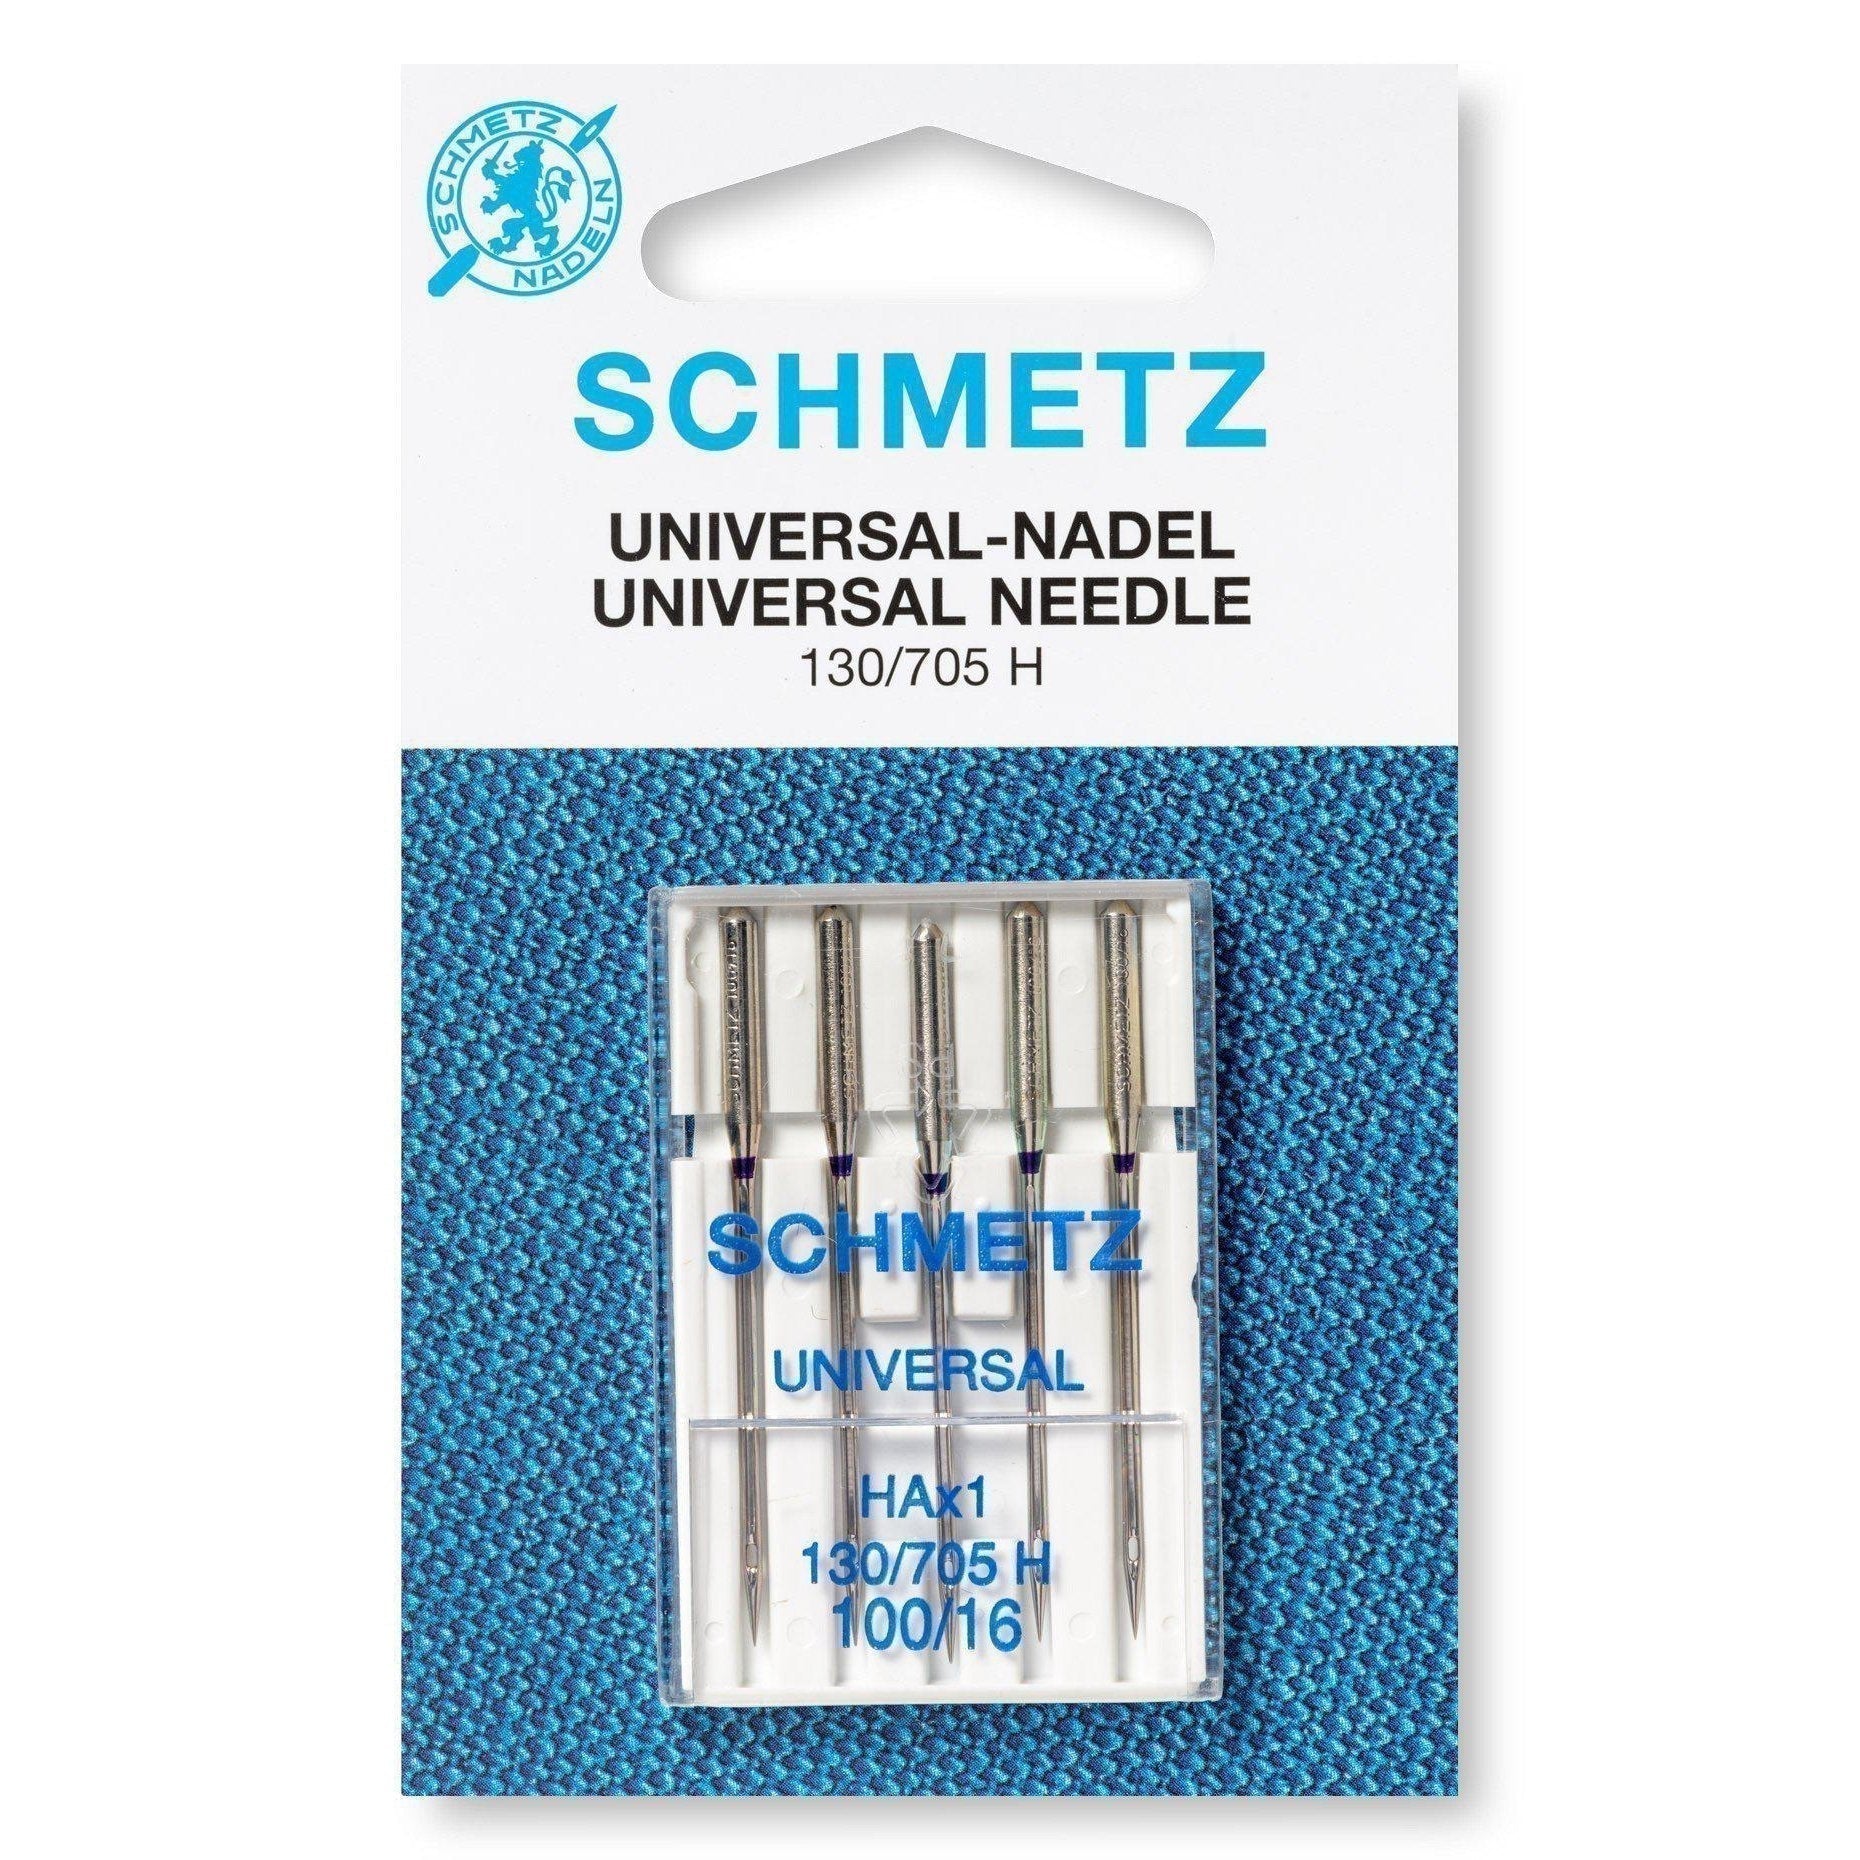 Schmetz-Universal Needles 65/9-sewing notion-gather here online